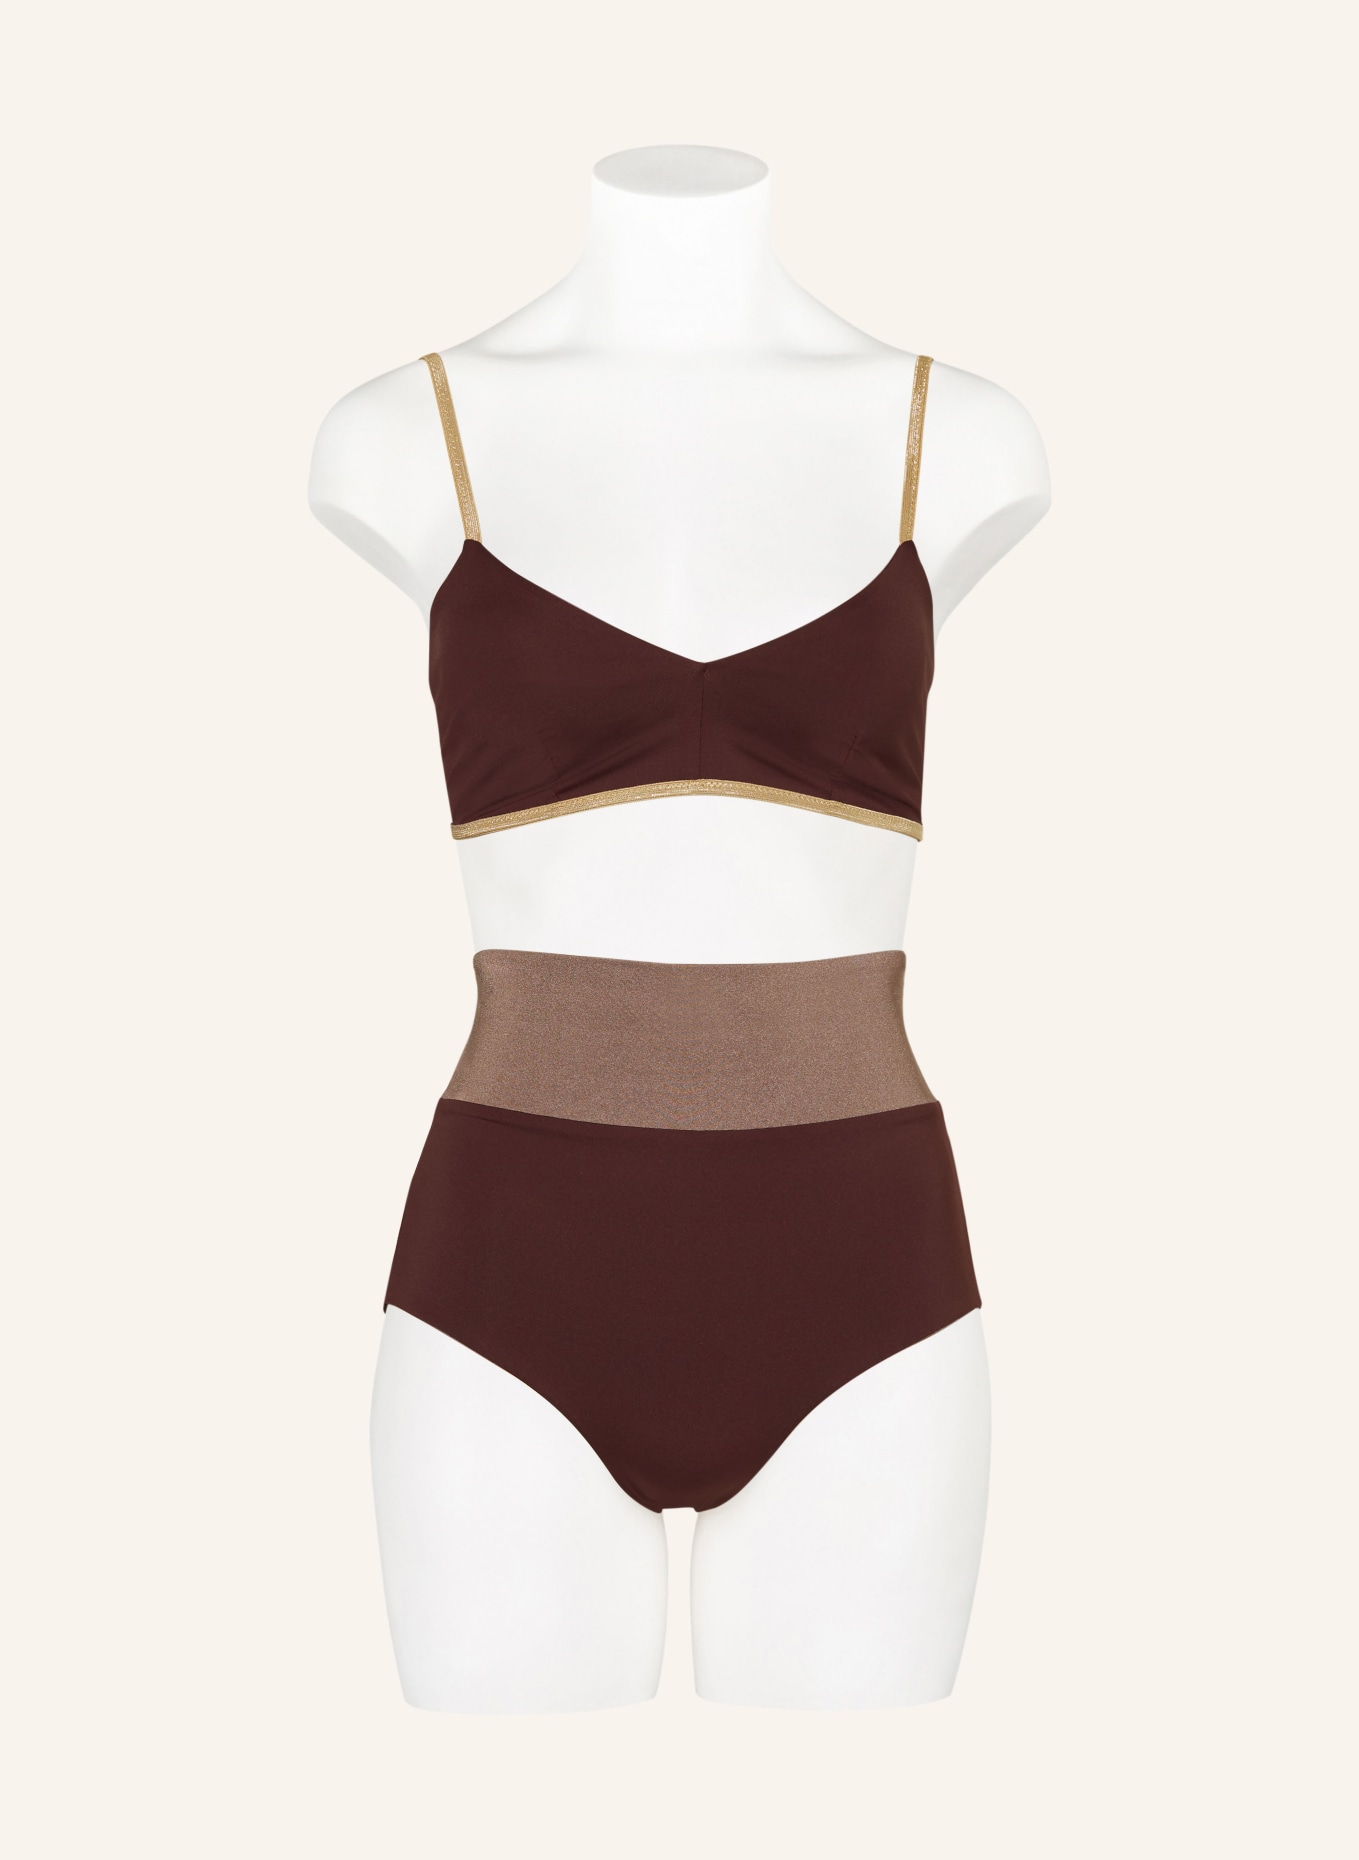 MYMARINI Bralette-Bikini-Top CLASSIC SHINE zum Wenden mit UV-Schutz 50+, Farbe: HELLBRAUN (Bild 4)